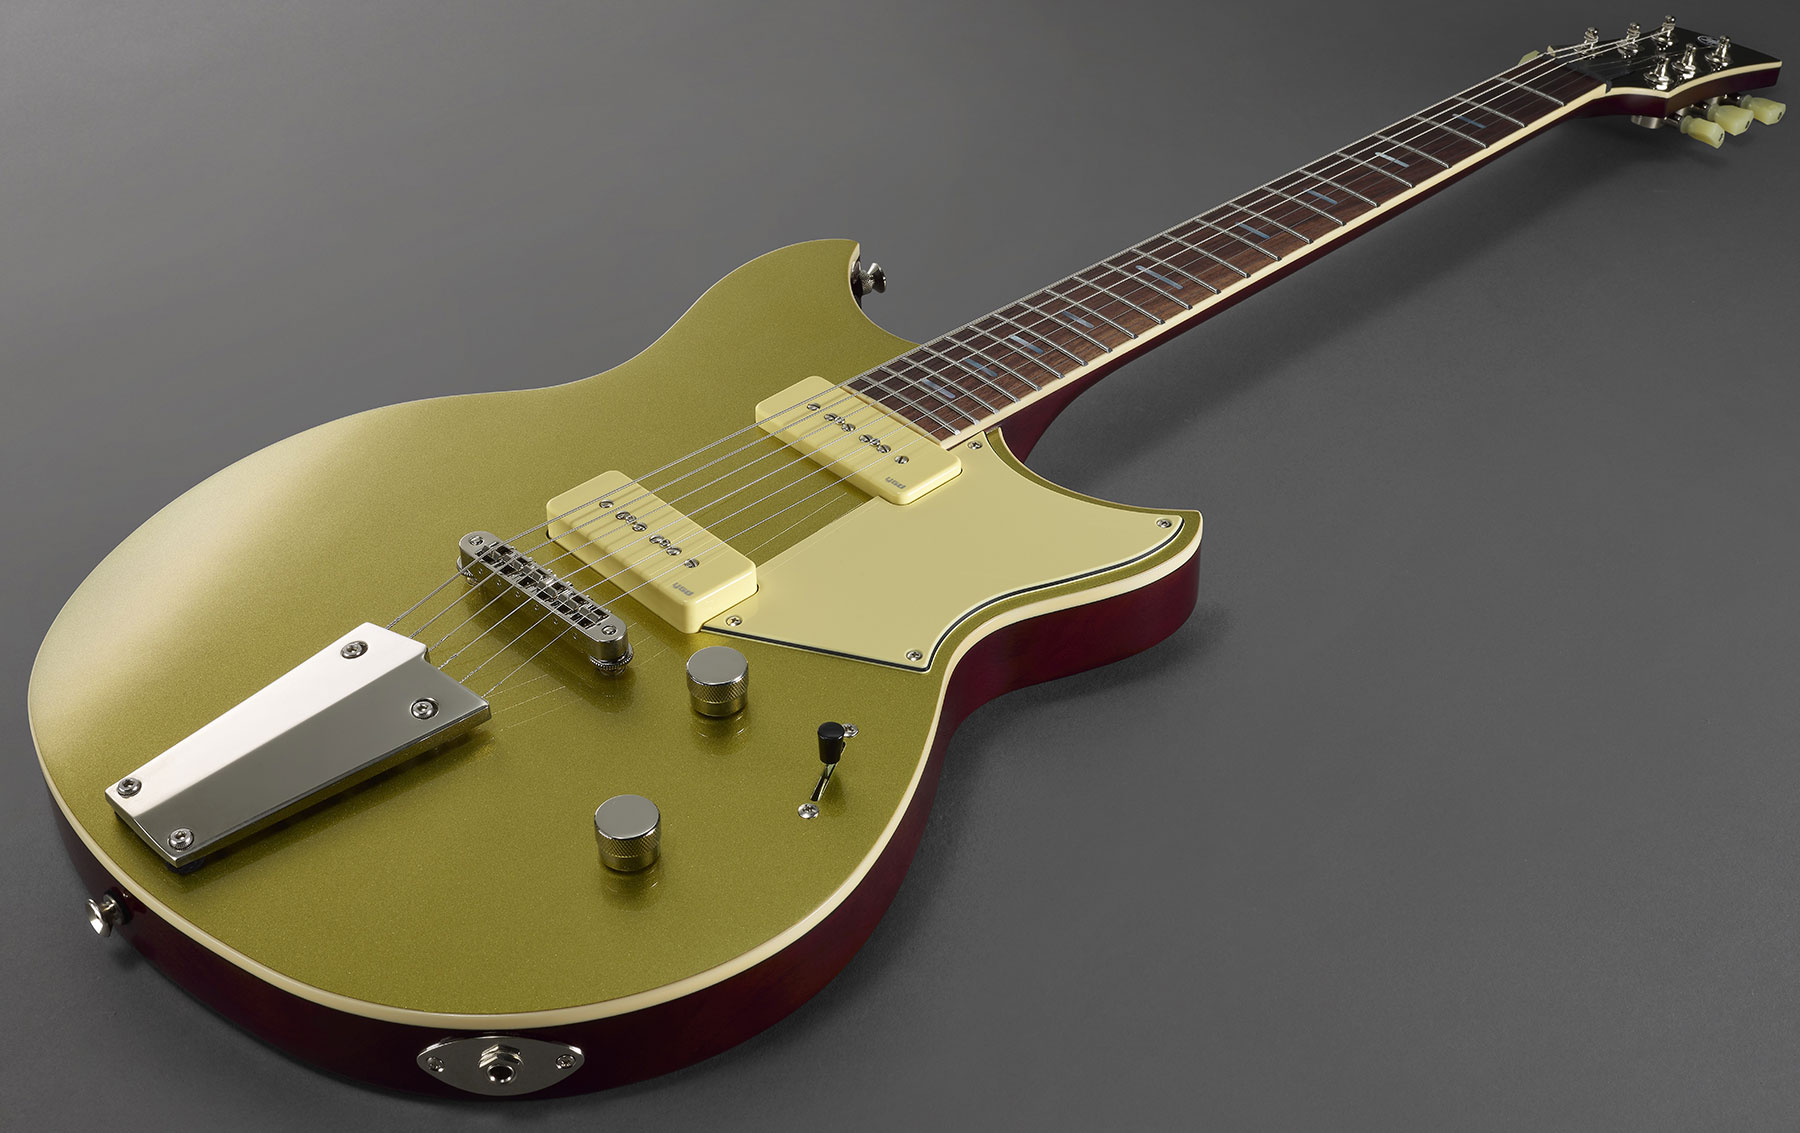 Yamaha Rsp02t Revstar Professionnal Jap 2p90 Ht Rw - Crisp Gold - Guitarra eléctrica de doble corte - Variation 3